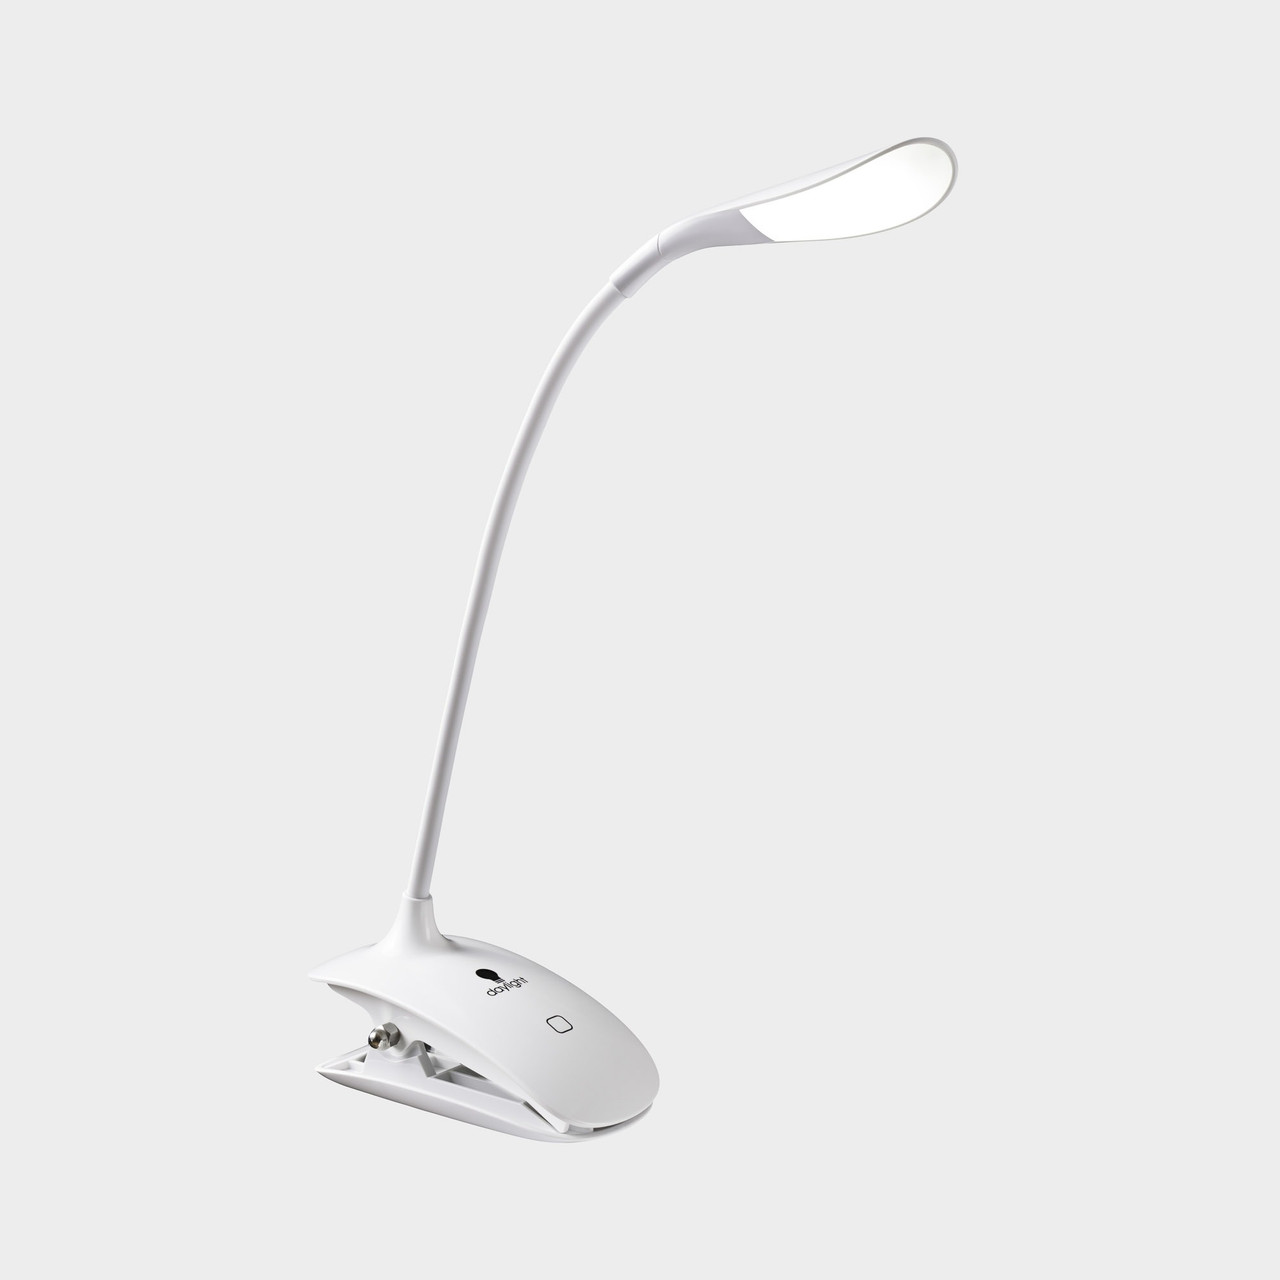 Daylight Company Daylight Smart LED Lamp Clip On